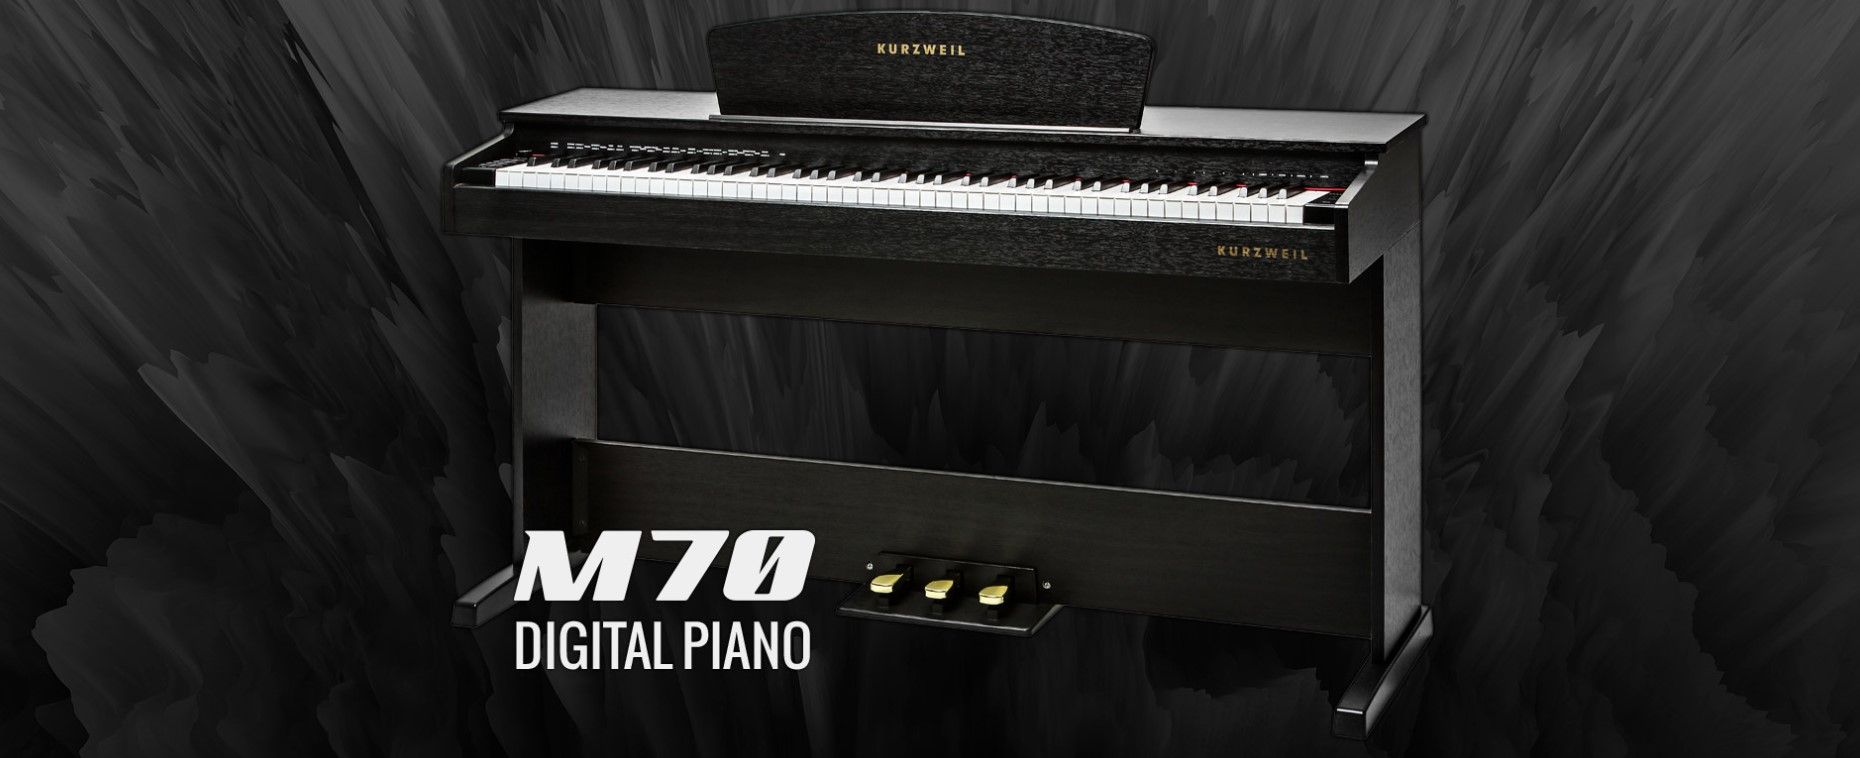  hracie digitálne piano kurzweil M70 SR pripojenie slúchadiel výborný pomer cena kvalita jednoduché ovládanie usb port midi automatické doprovody